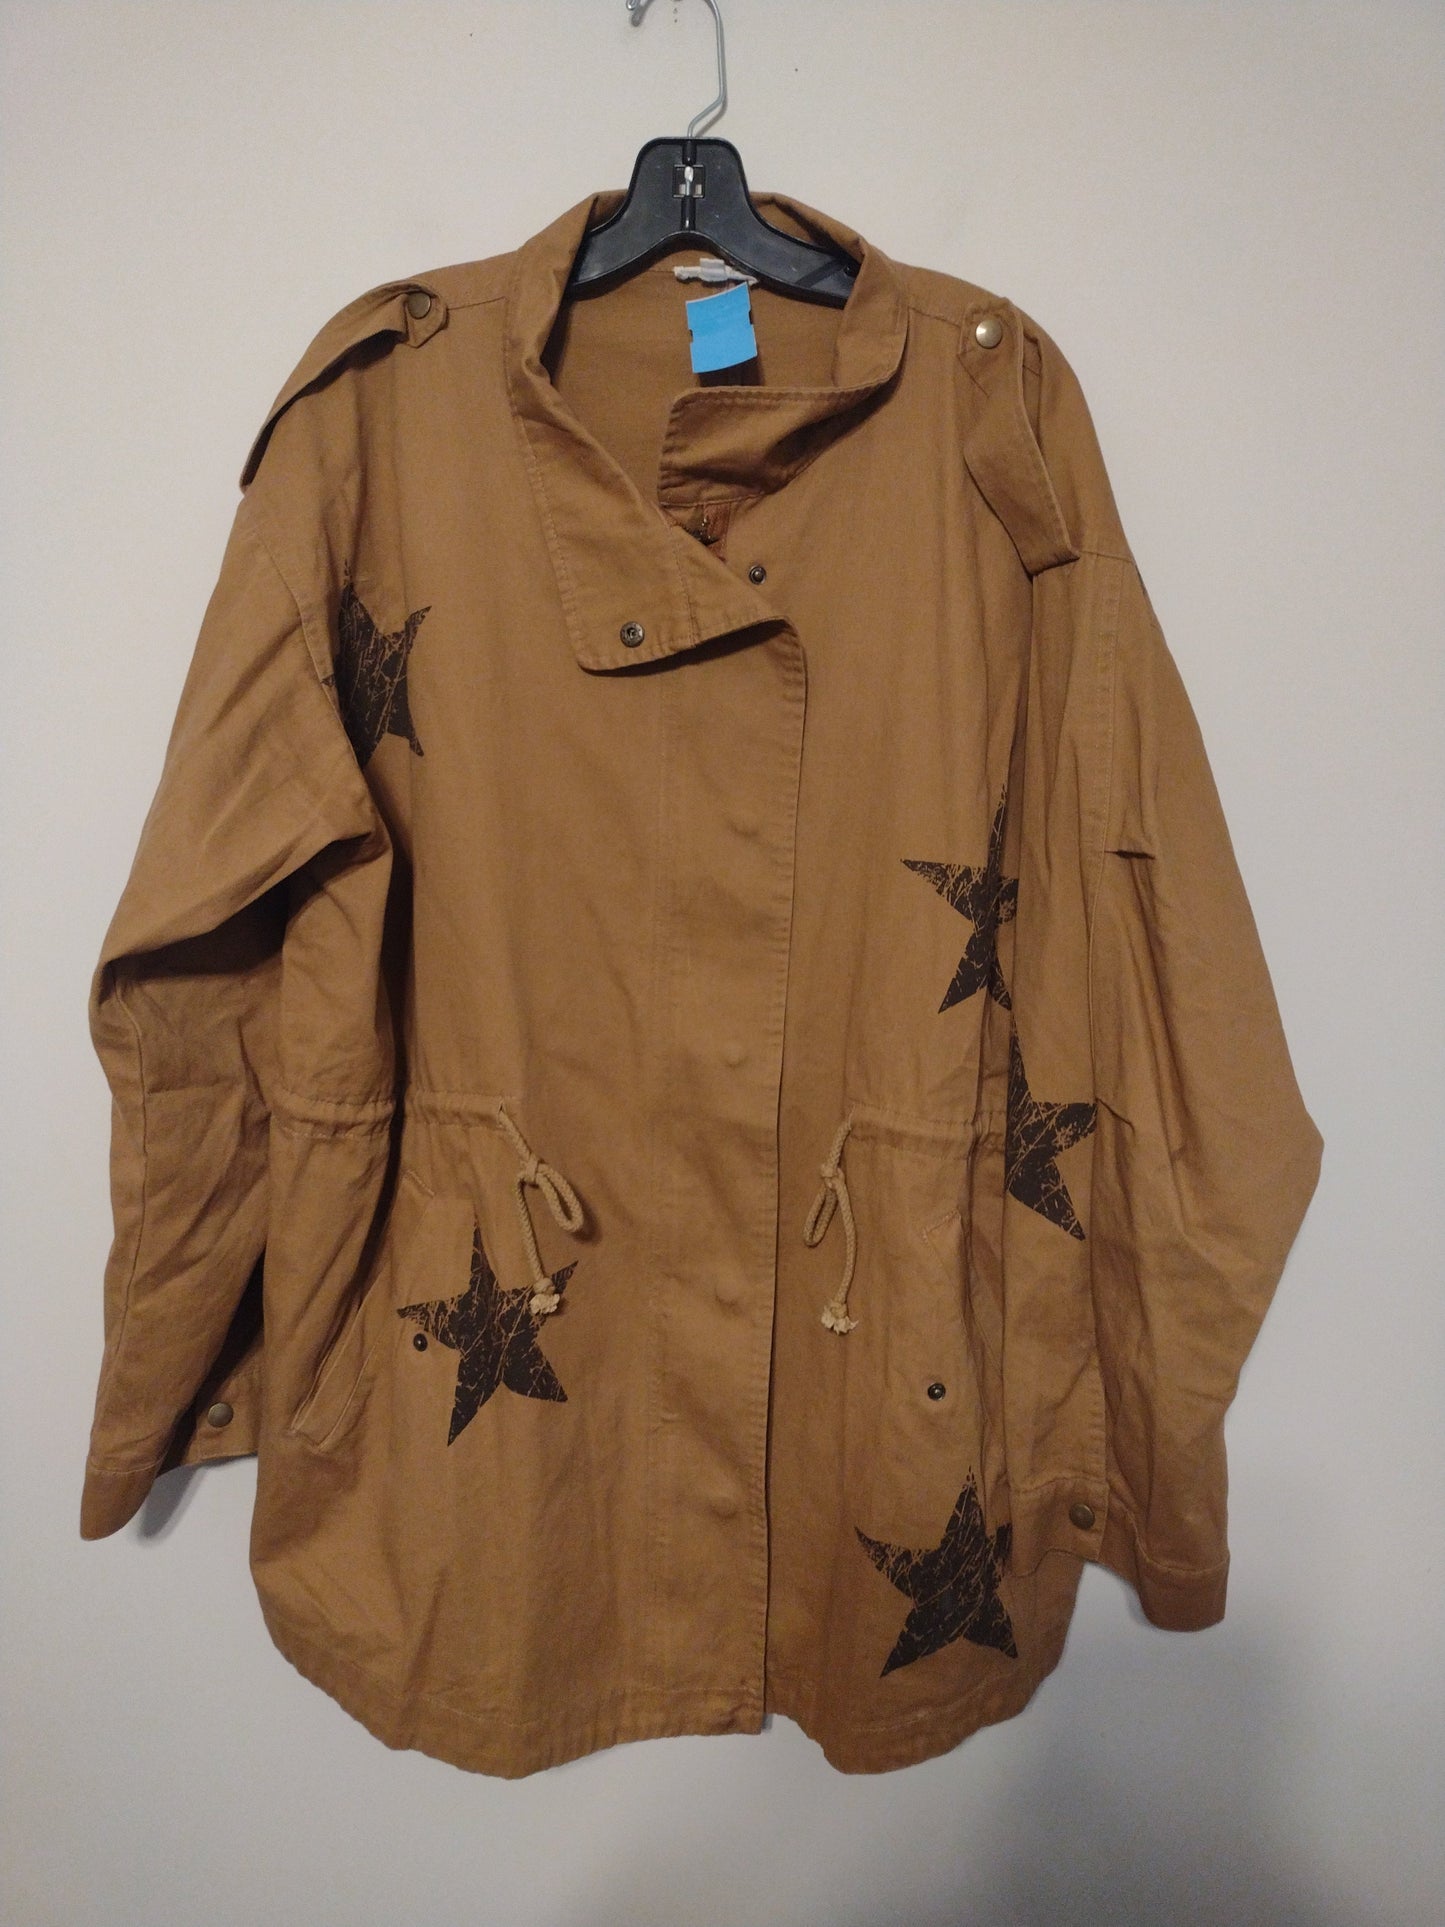 Jacket Other By Oddi  Size: 2x